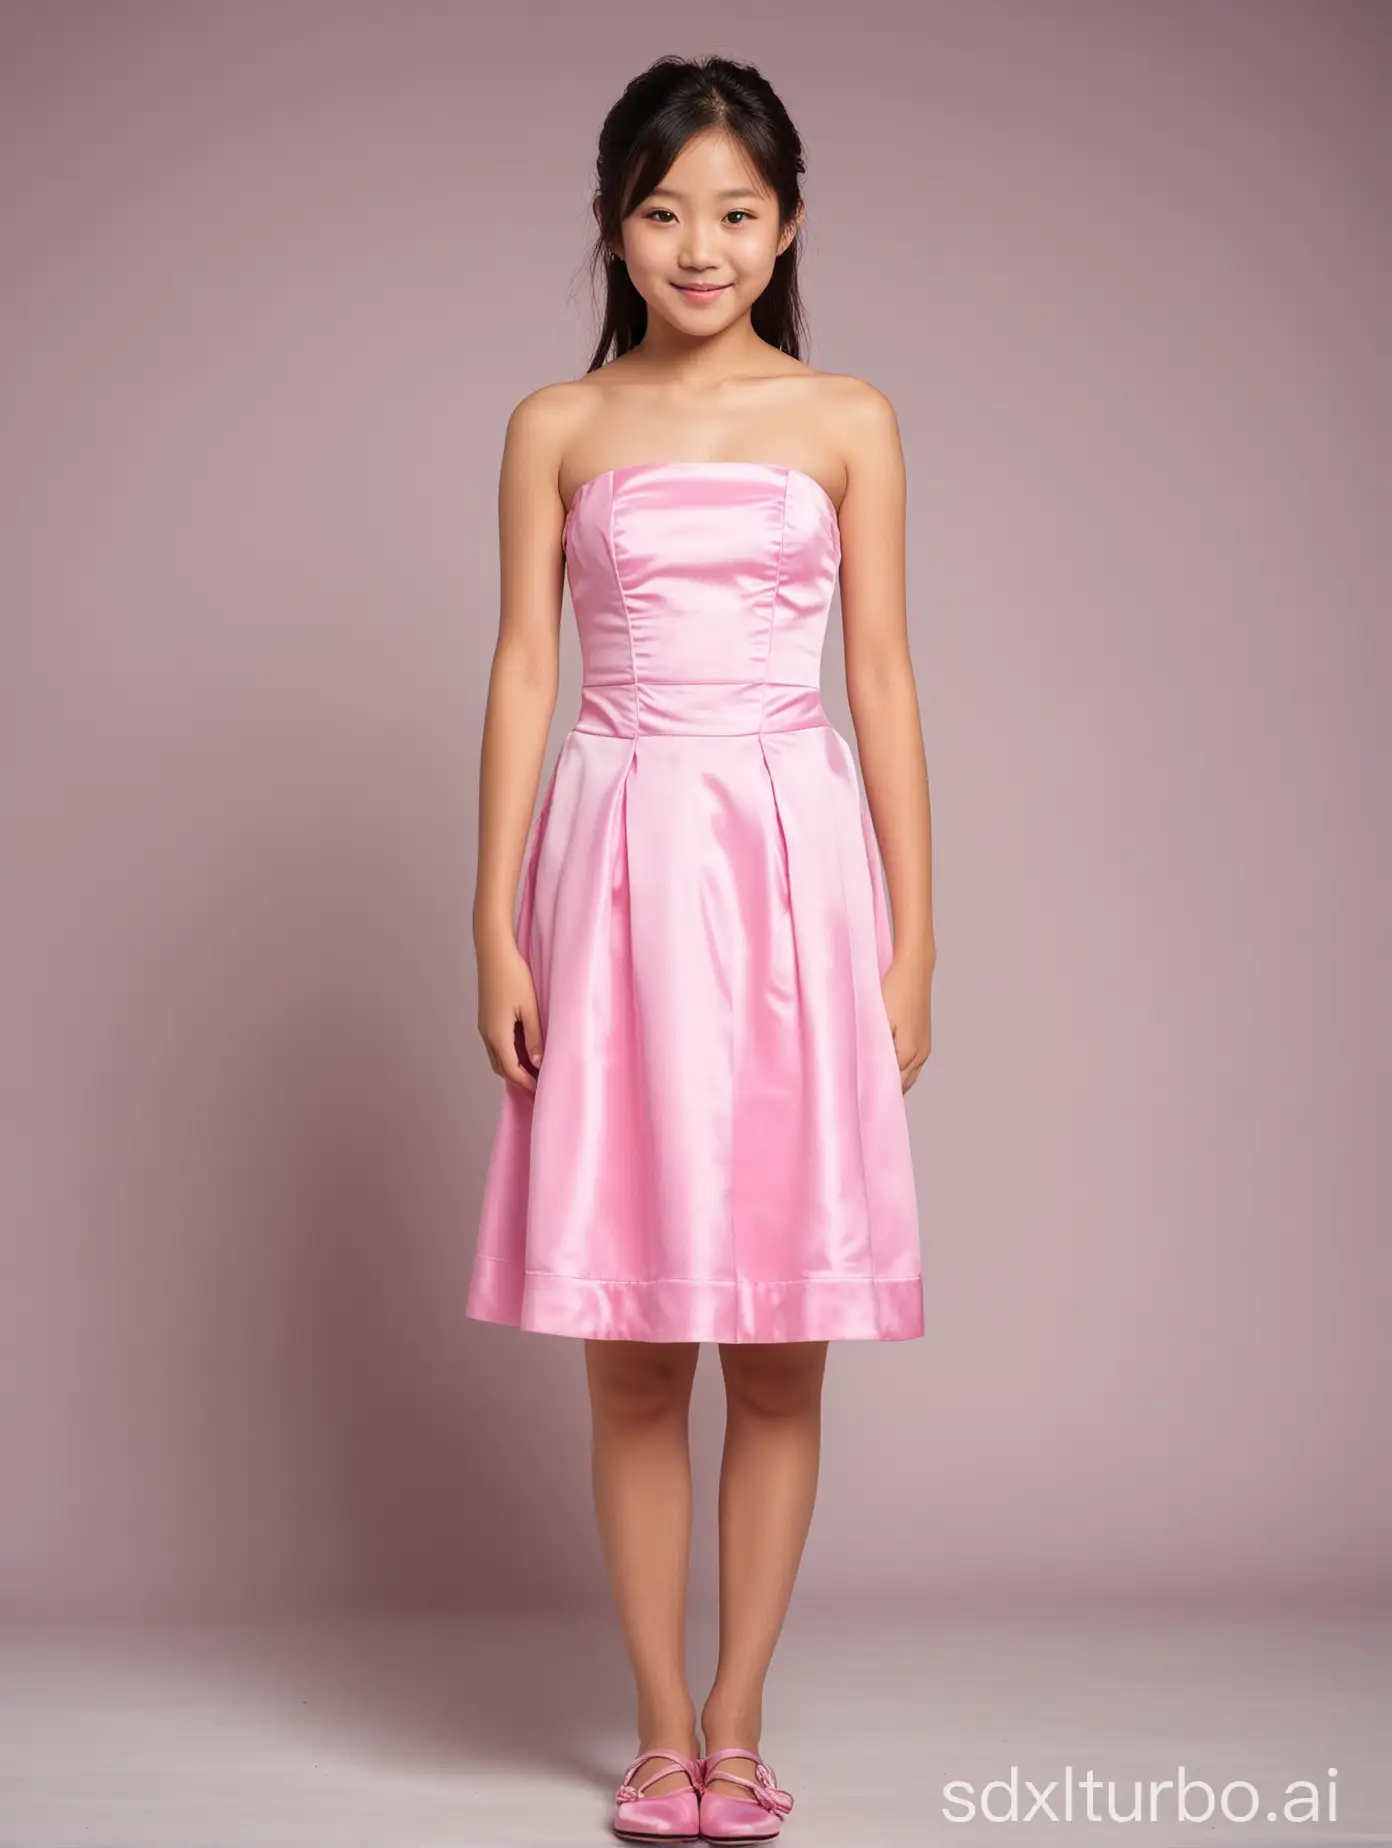 Japanese-Girl-in-Pink-Strapless-Dress-Full-Body-Portrait